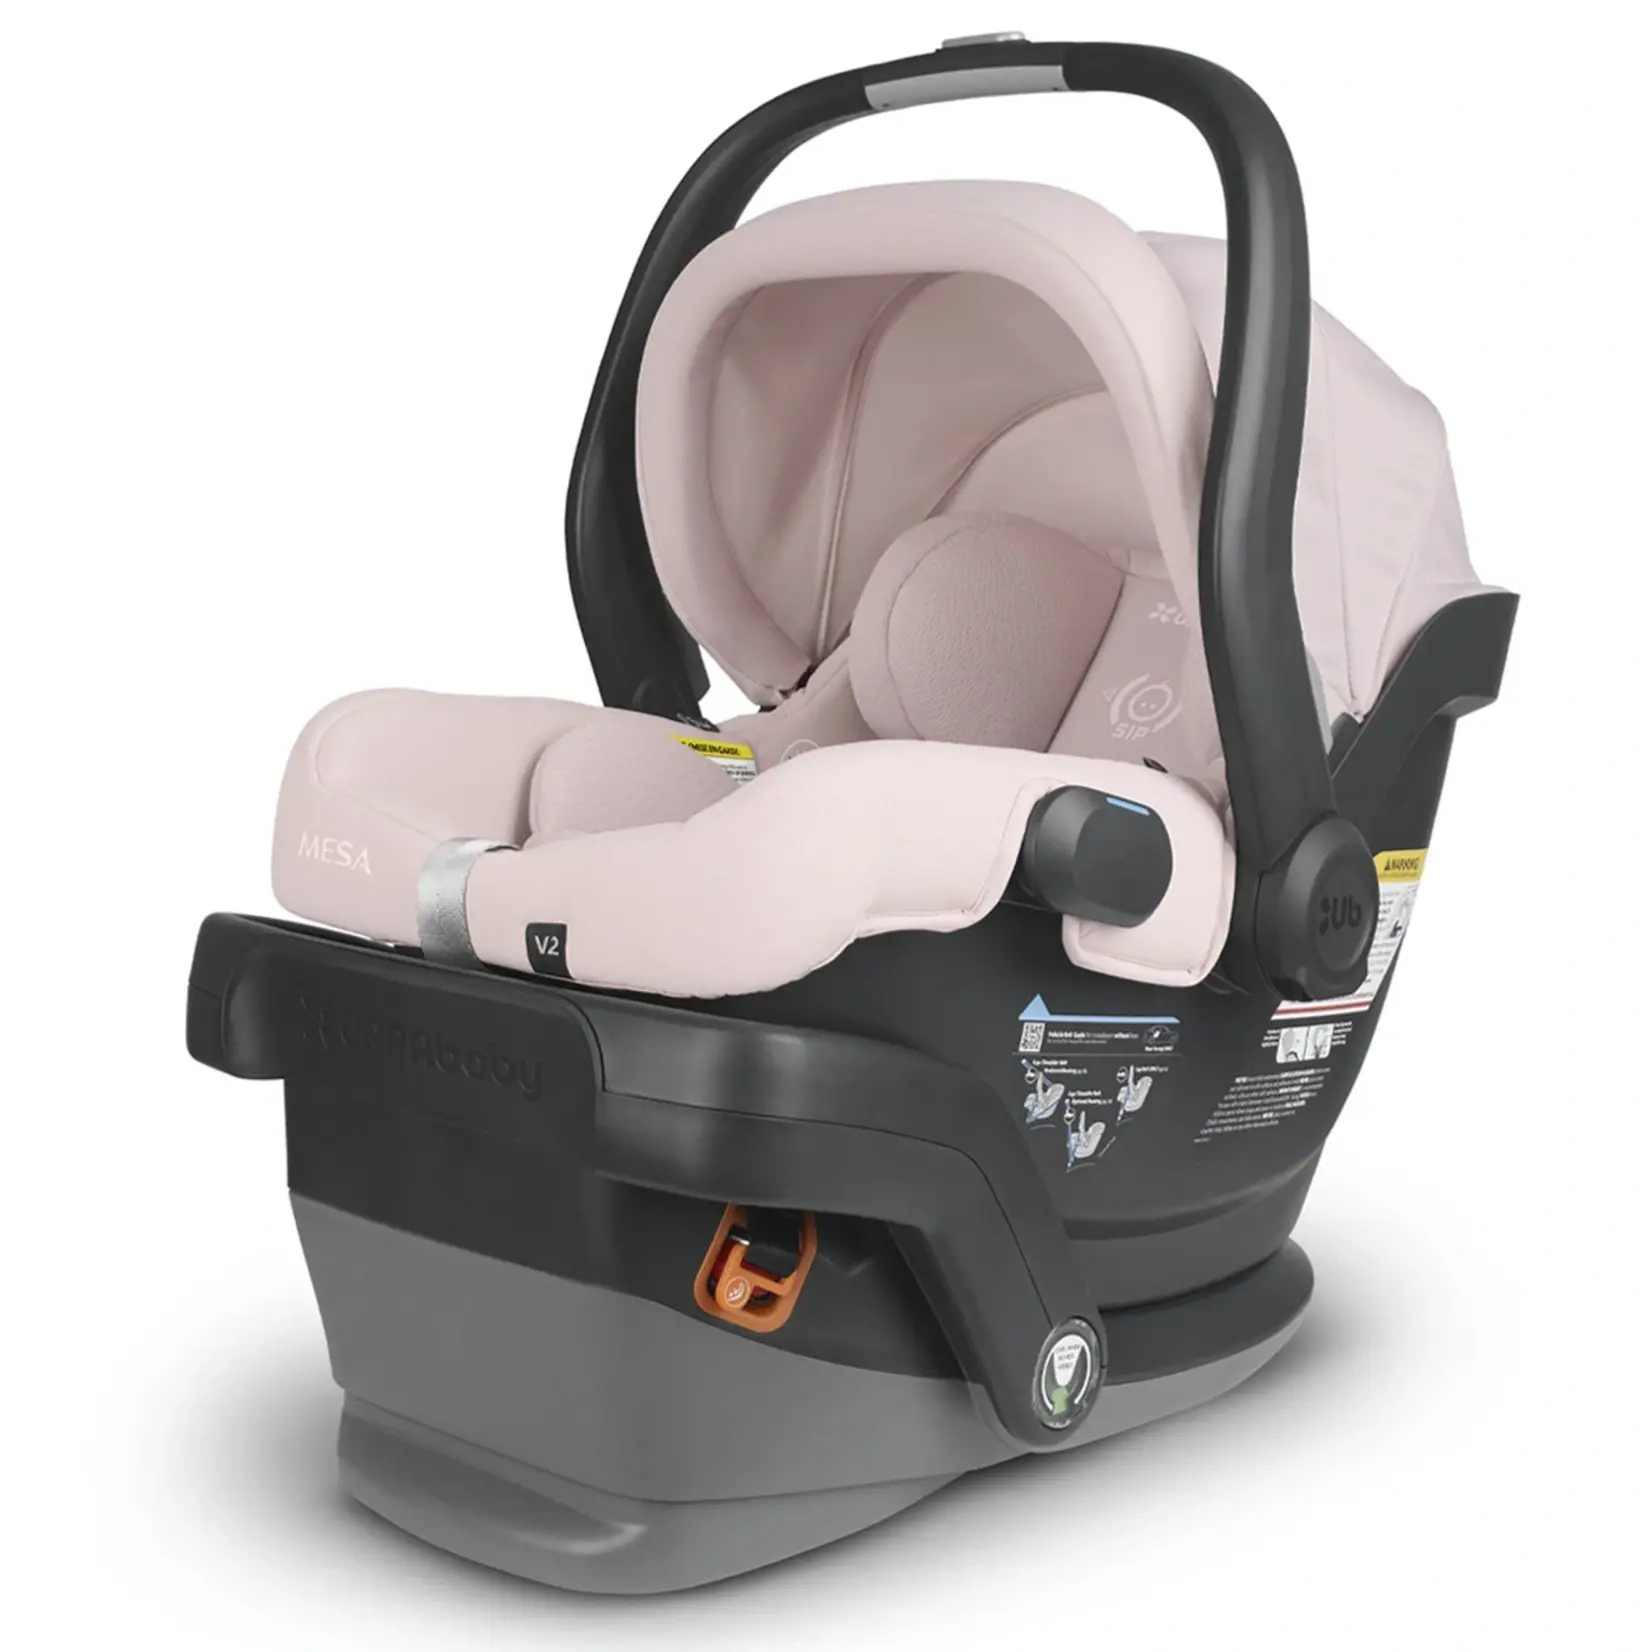 Uppababy UPPABABY MESA V2 INFANT SEATS